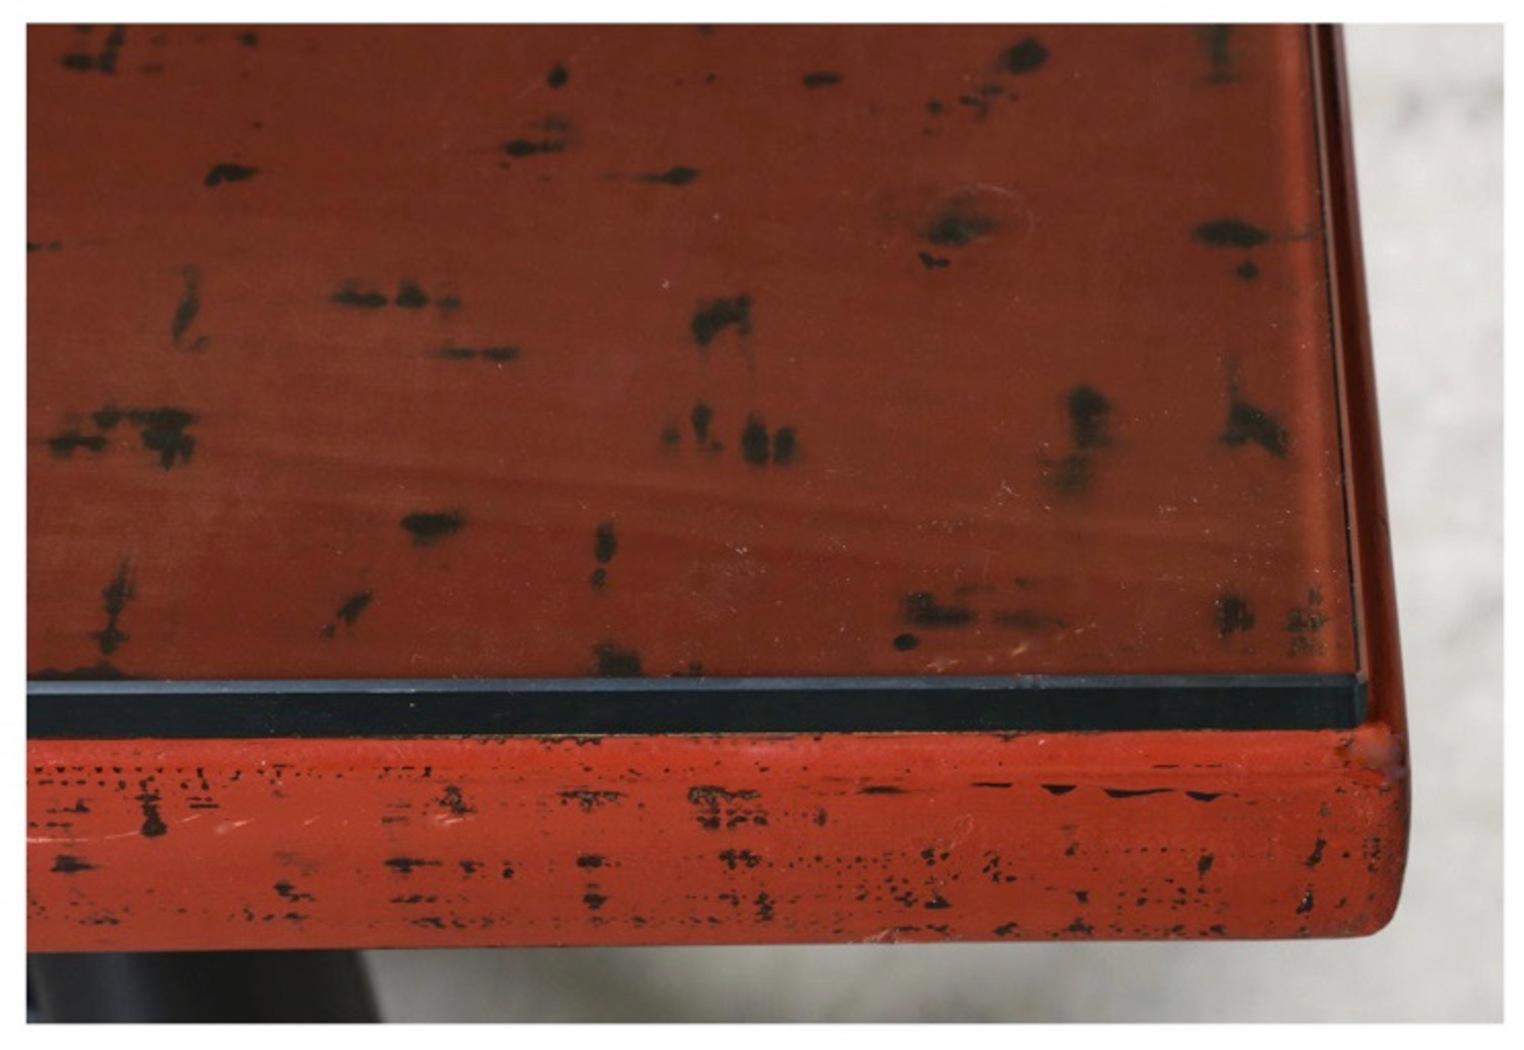 Dies ist ein wunderbares Beispiel für einen japanischen Negoro-Lacktisch. Traditionelle japanische niedrige Tische sind zwischen 12 und 15 Zoll hoch; dieser Tisch muss für den Exportmarkt geschaffen worden sein und misst sehr bequeme 18 Zoll - die